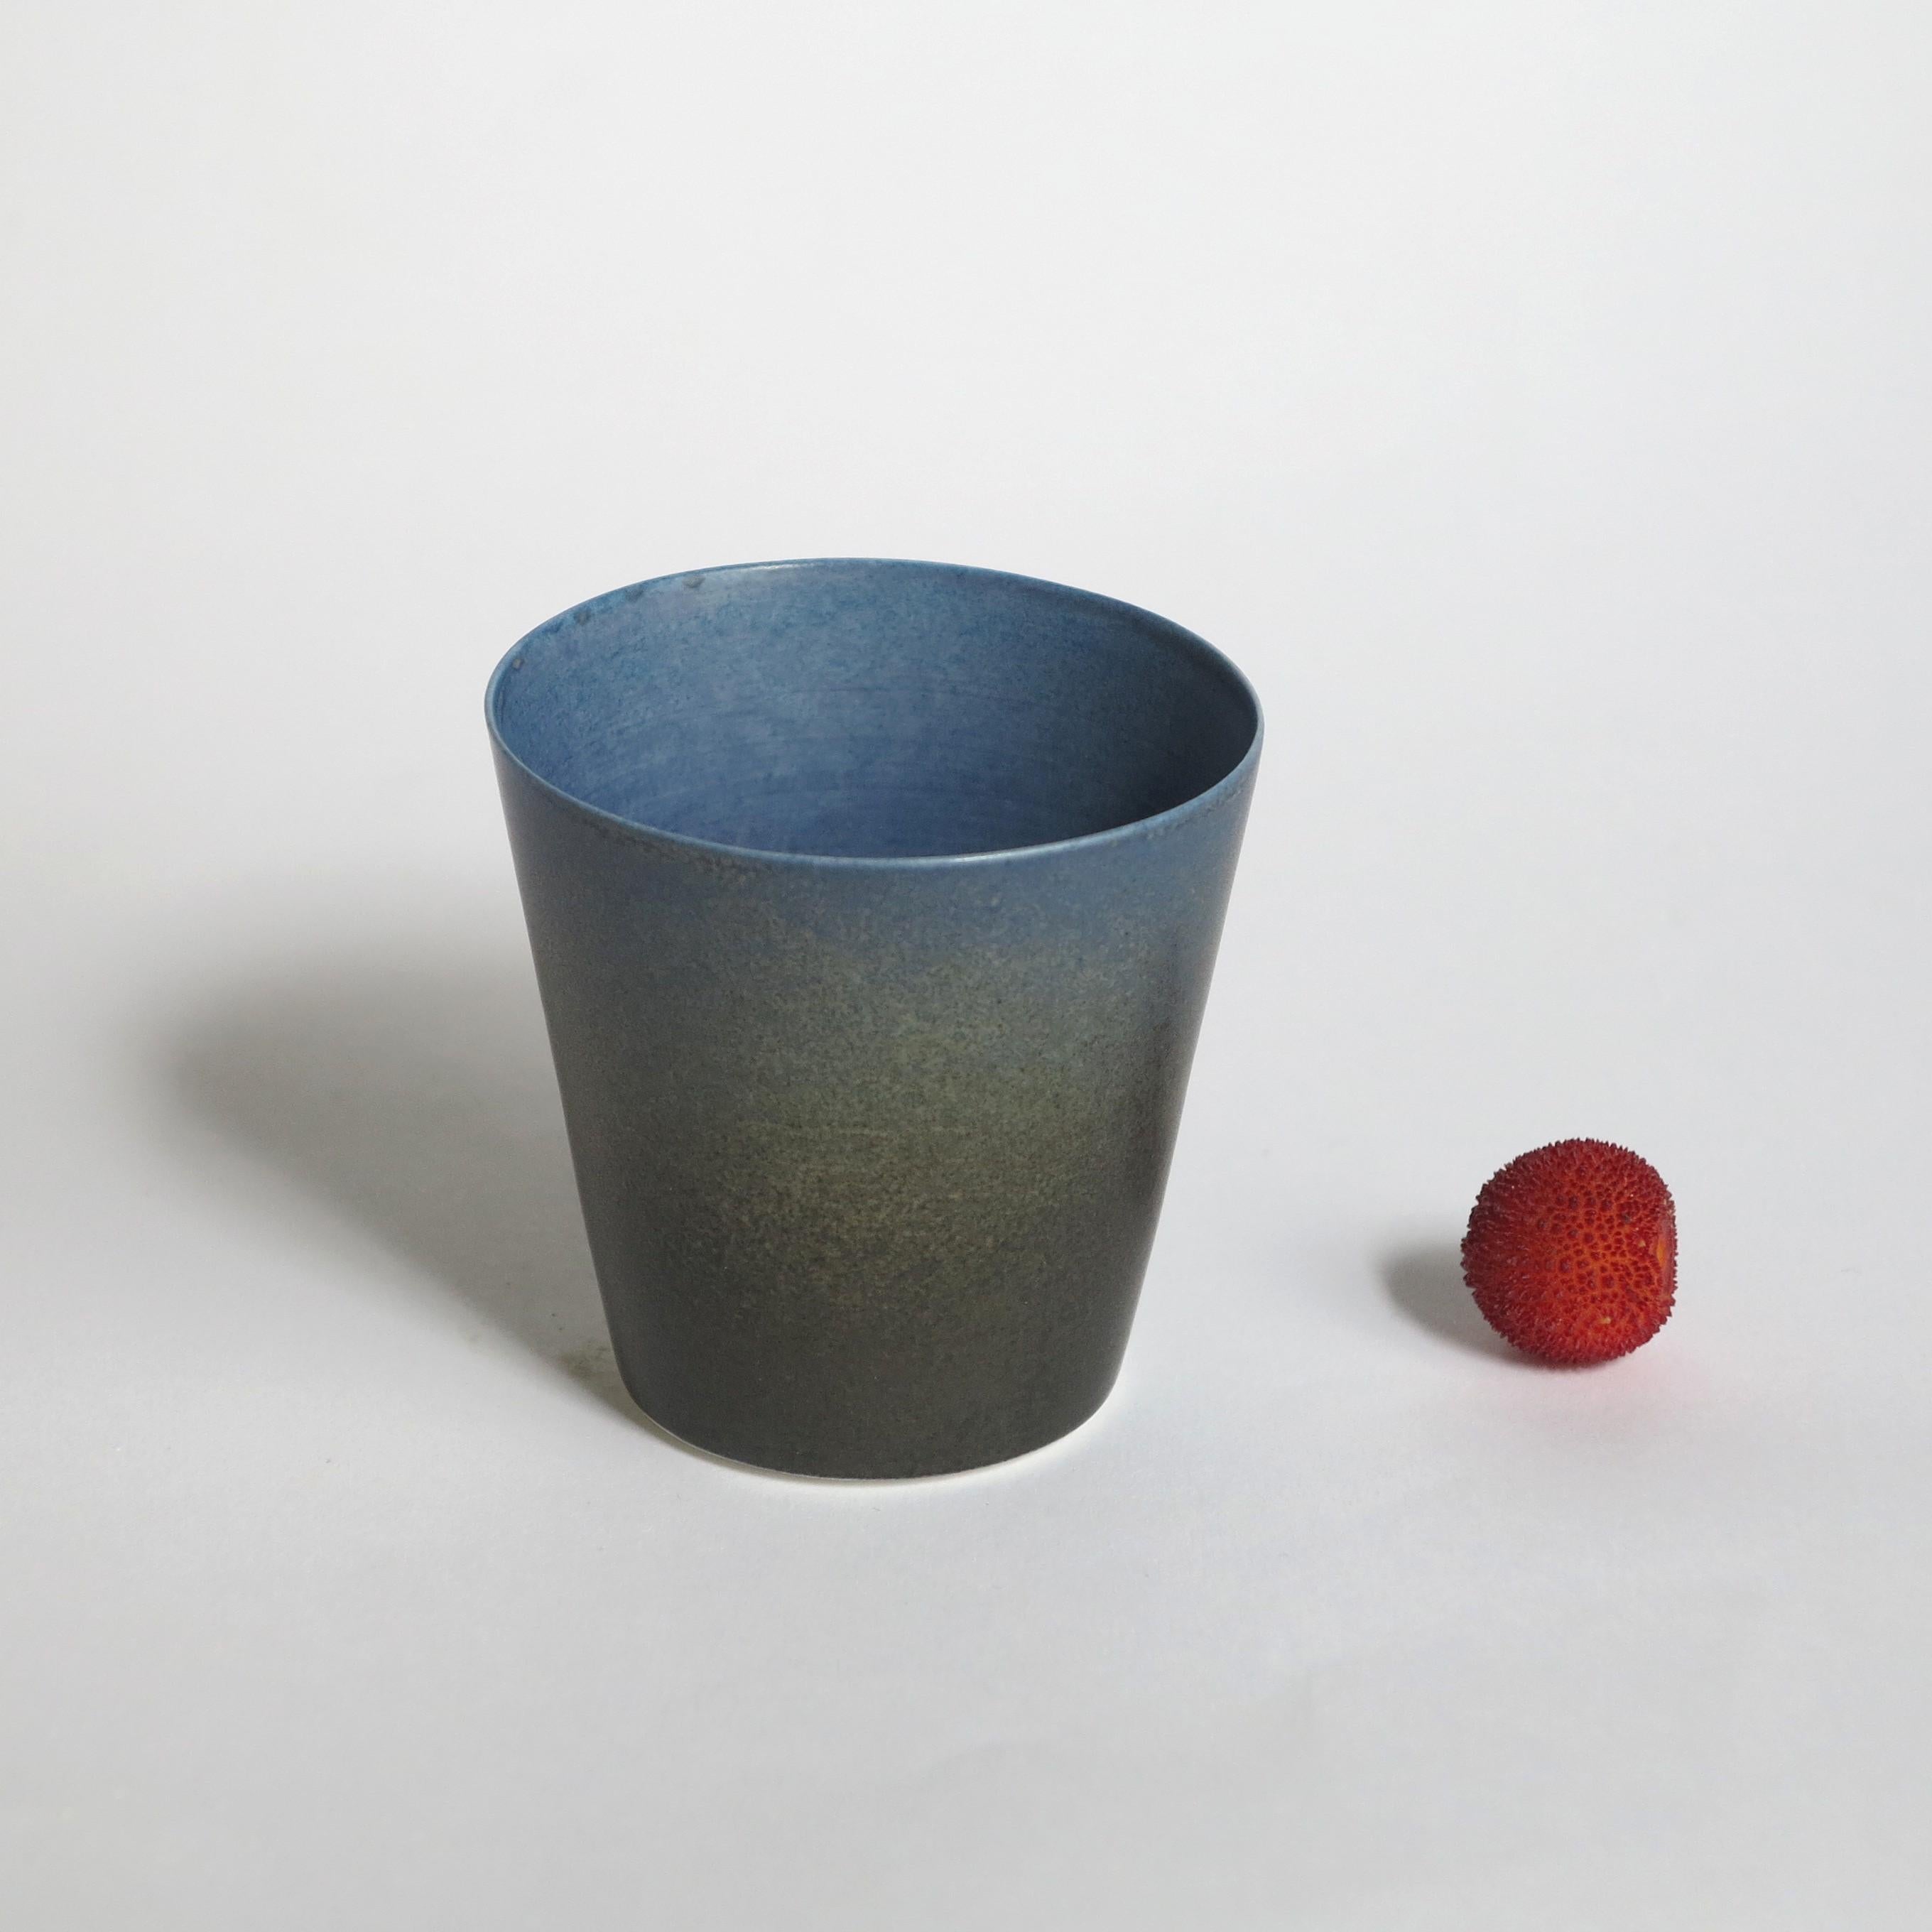 Ensemble de 4 tasses à café bleues en porcelaine de Cica Gomez
Prix pour un ensemble de 4.
Dimensions : Ø 6,5 x H 6 cm
Matériaux : porcelaine

Objets habituels. Mon travail est d'abord motivé par la recherche de la ligne. Celui qu'il dessine